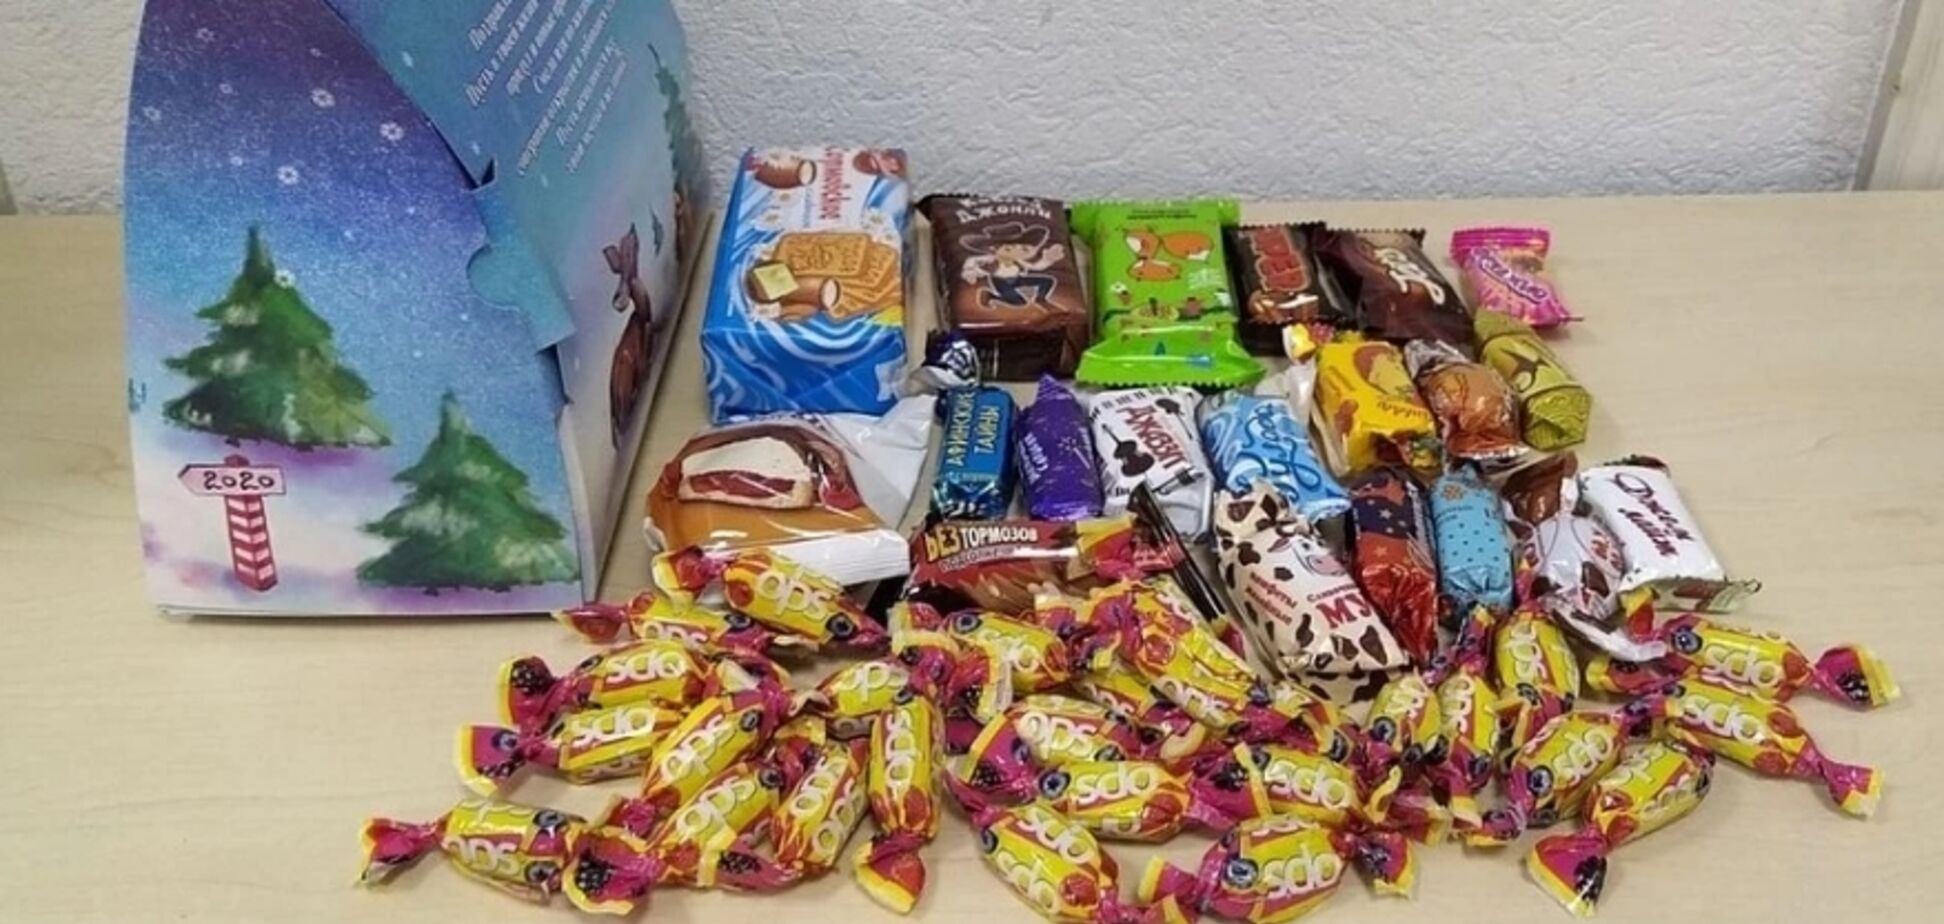 Спасибо, что живой: в Крыму оккупанты пытались скормить детям несъедобные конфеты